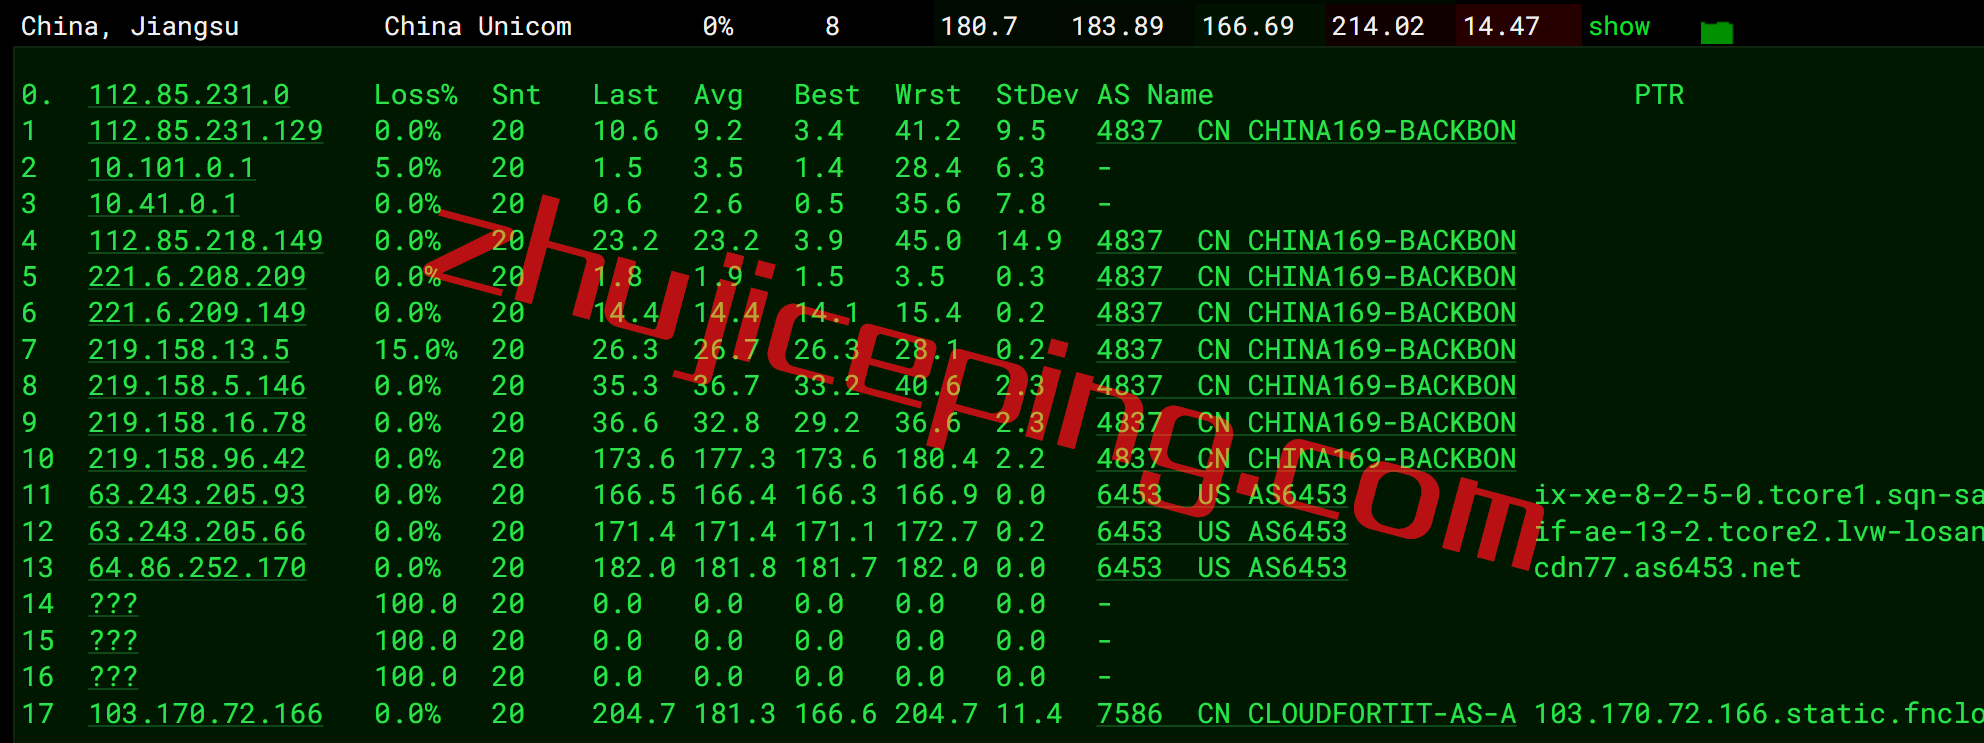 简单测评cubecloud美国三网联通AS4837网络的VPS，自带金盾防御CC攻击